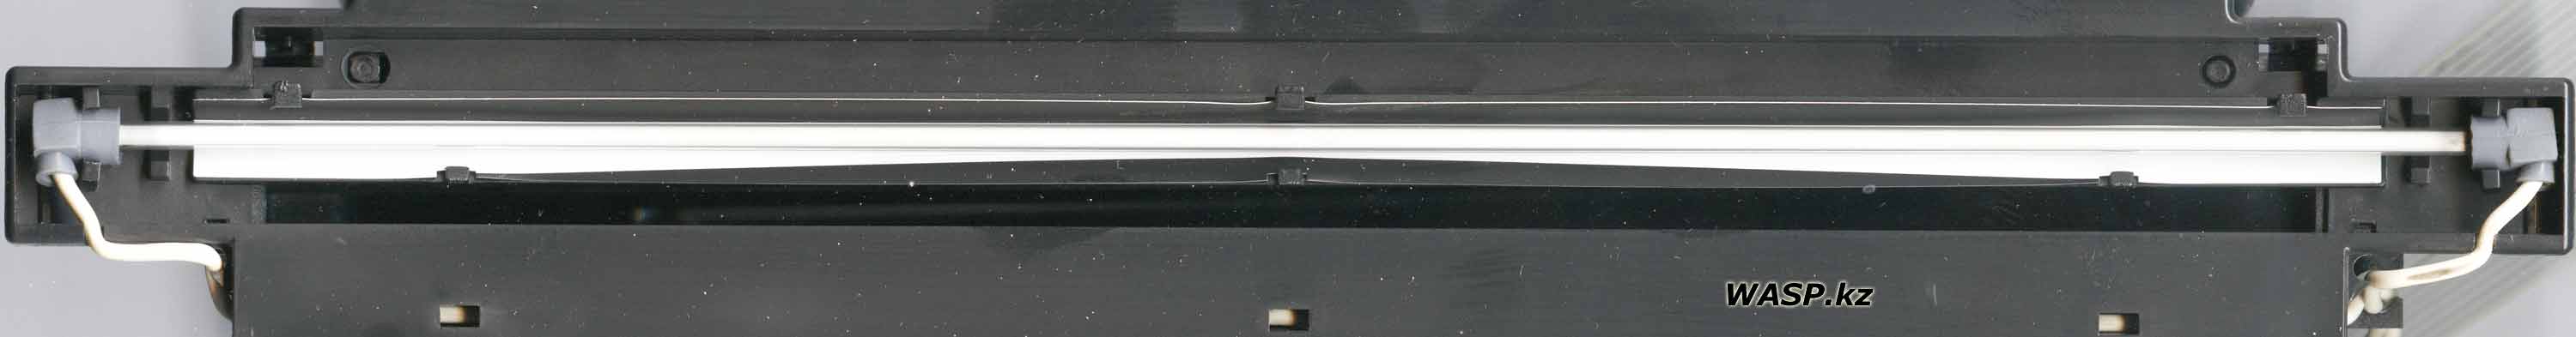 Acer 640BU лампа подсветки сканера